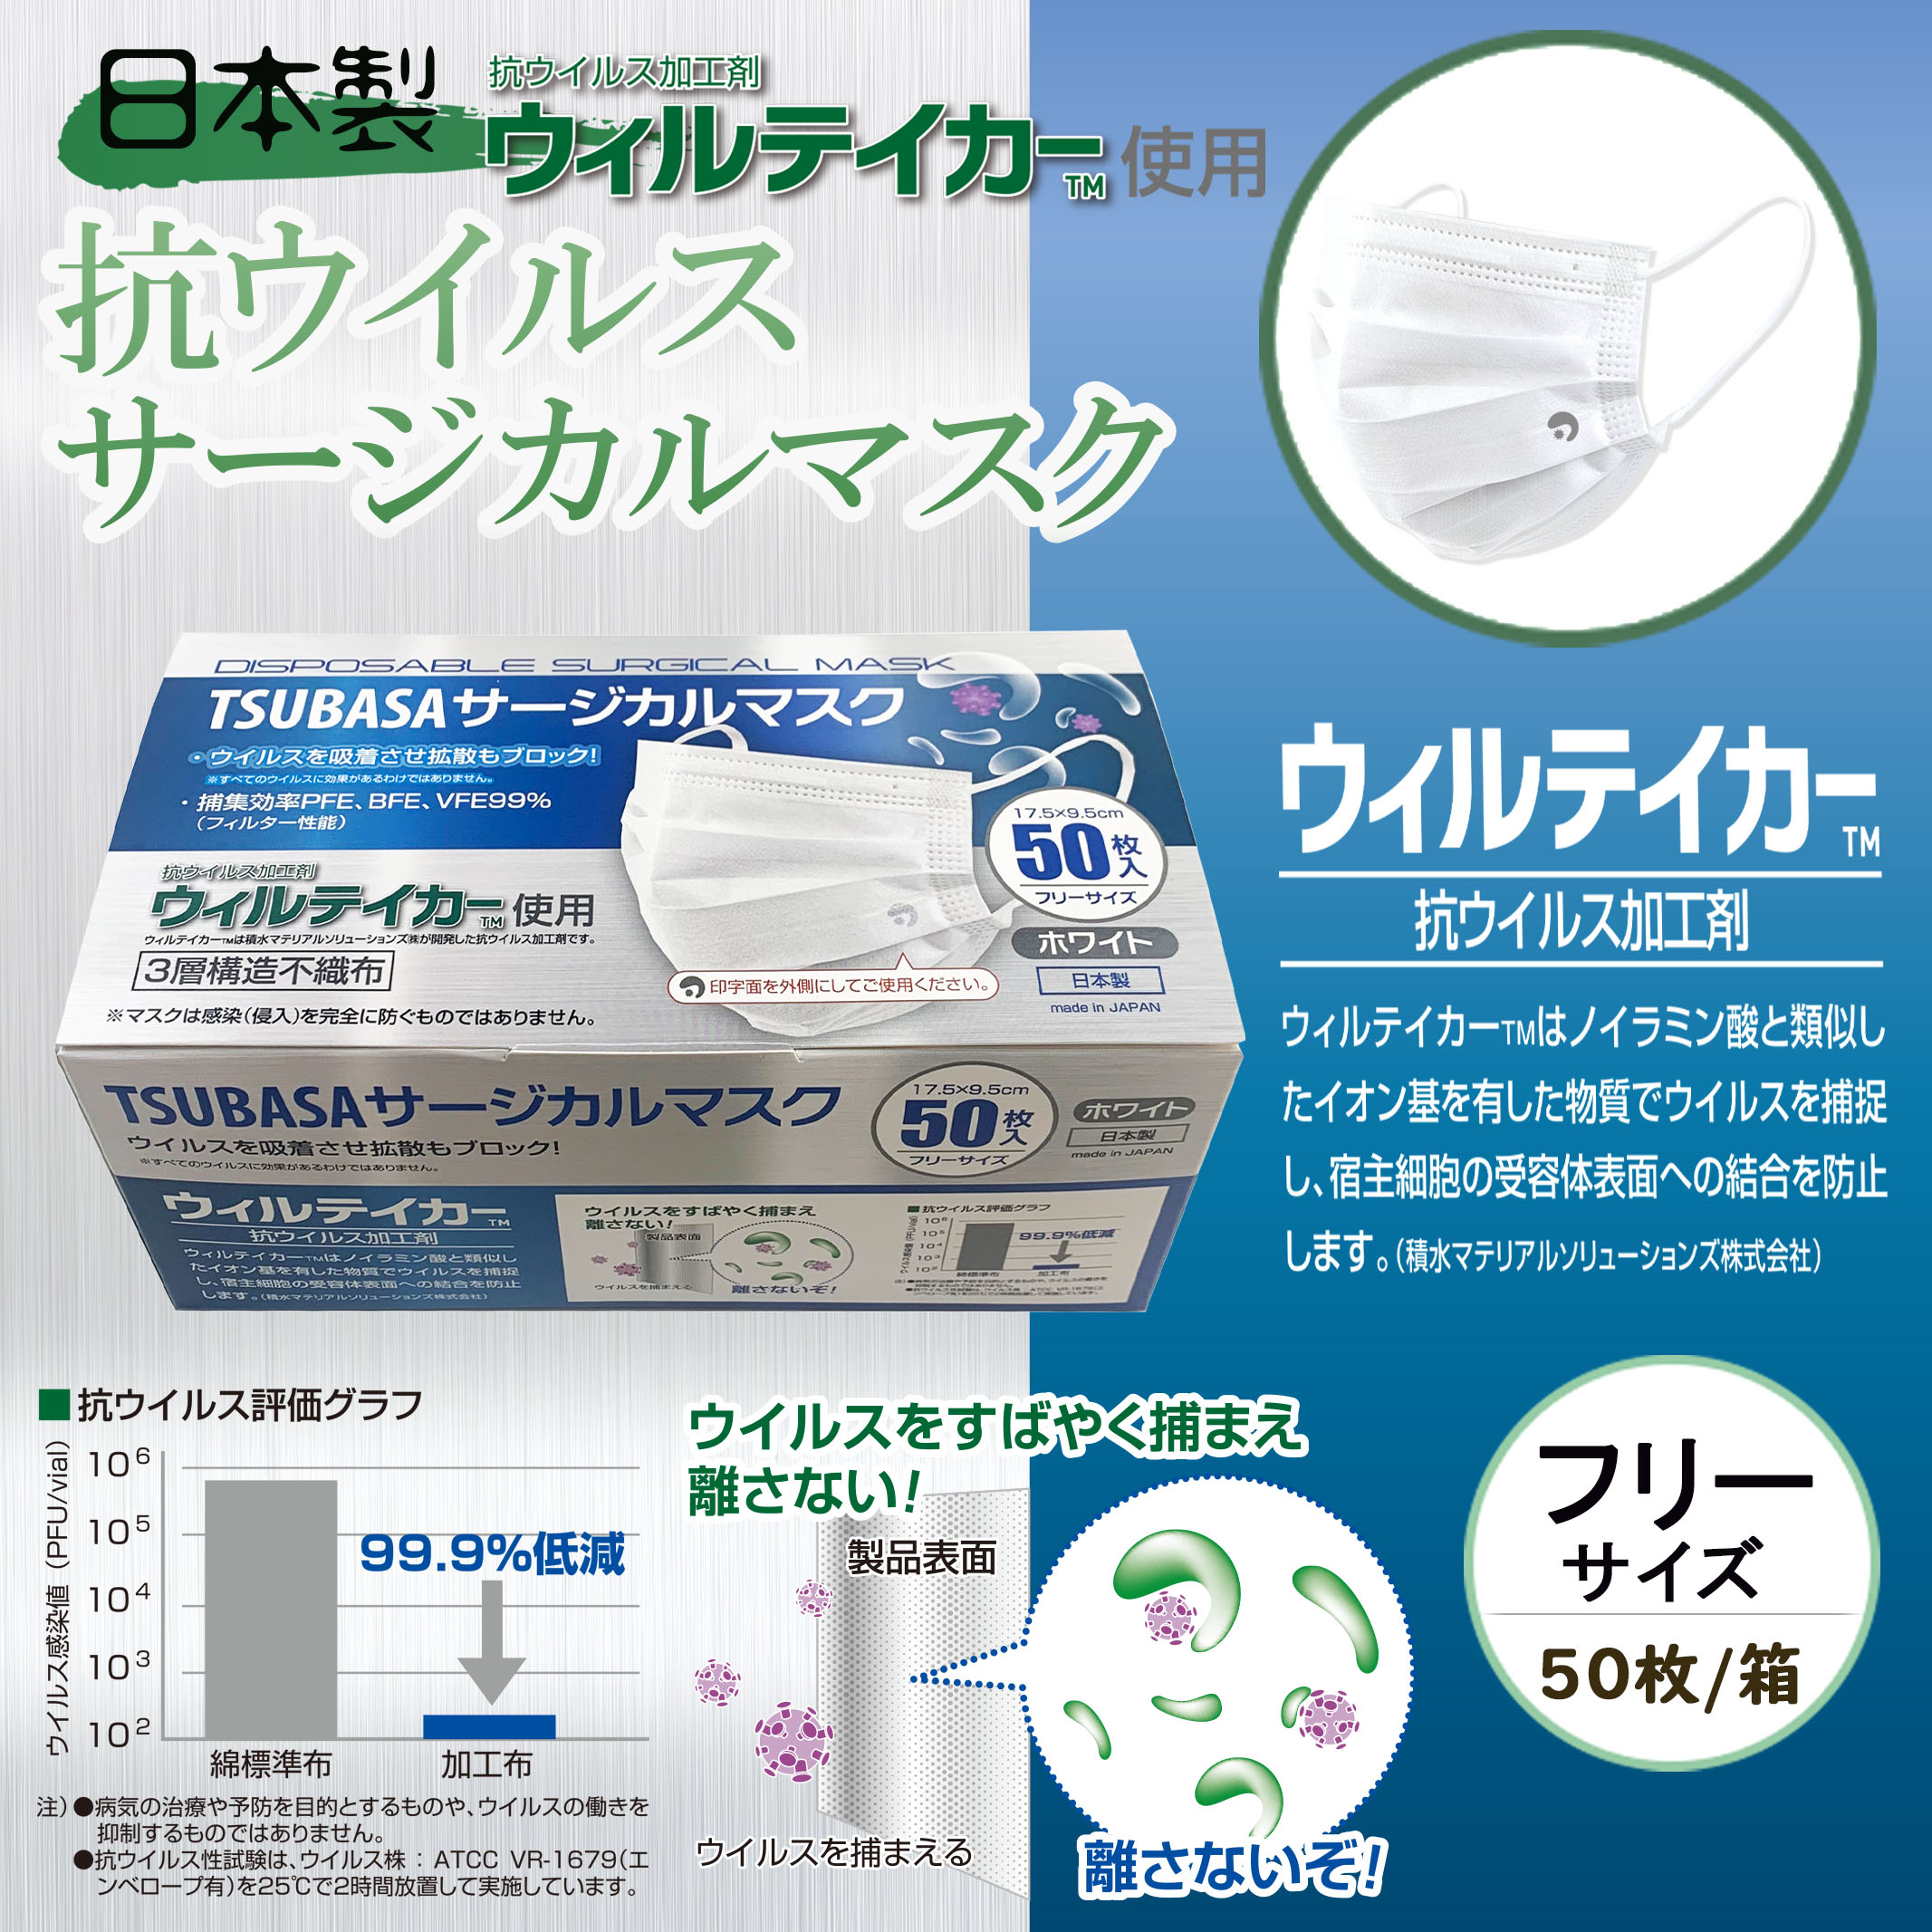 【日本製】TSUBASA サージカルマスク 抗ウイルス加工剤 ウィルテイカー使用 3層構造不織布マスク ホワイト 1BOX-50枚入り フリーサイズ